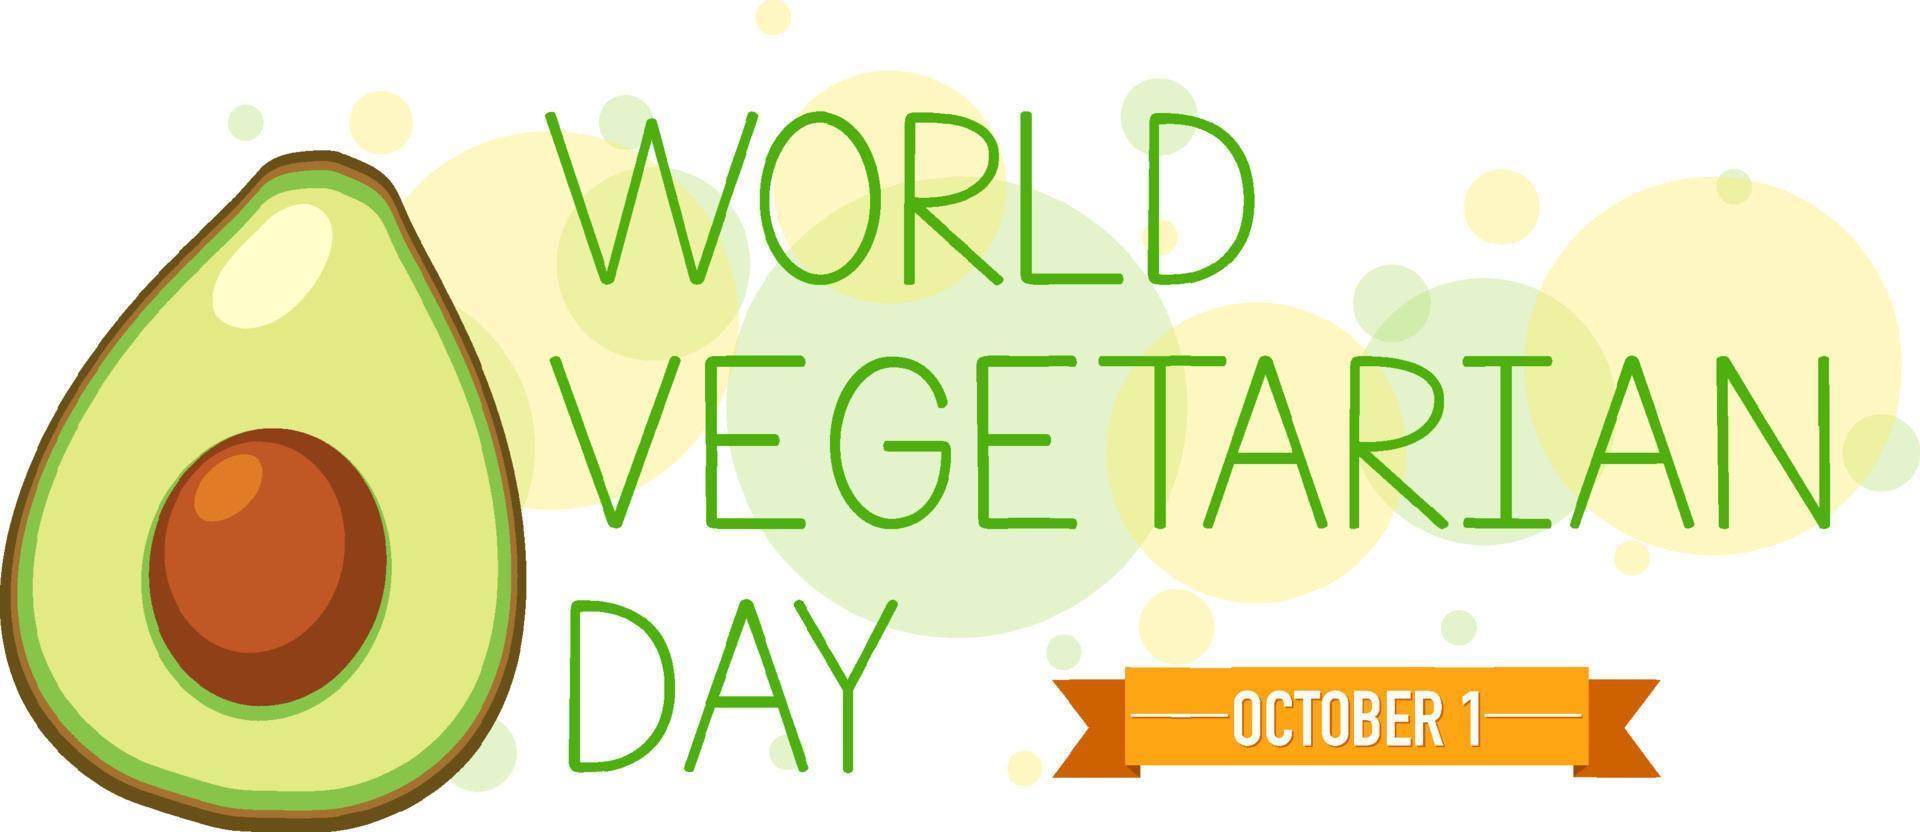 affiche de la journée mondiale des légumes avec un avocat vecteur